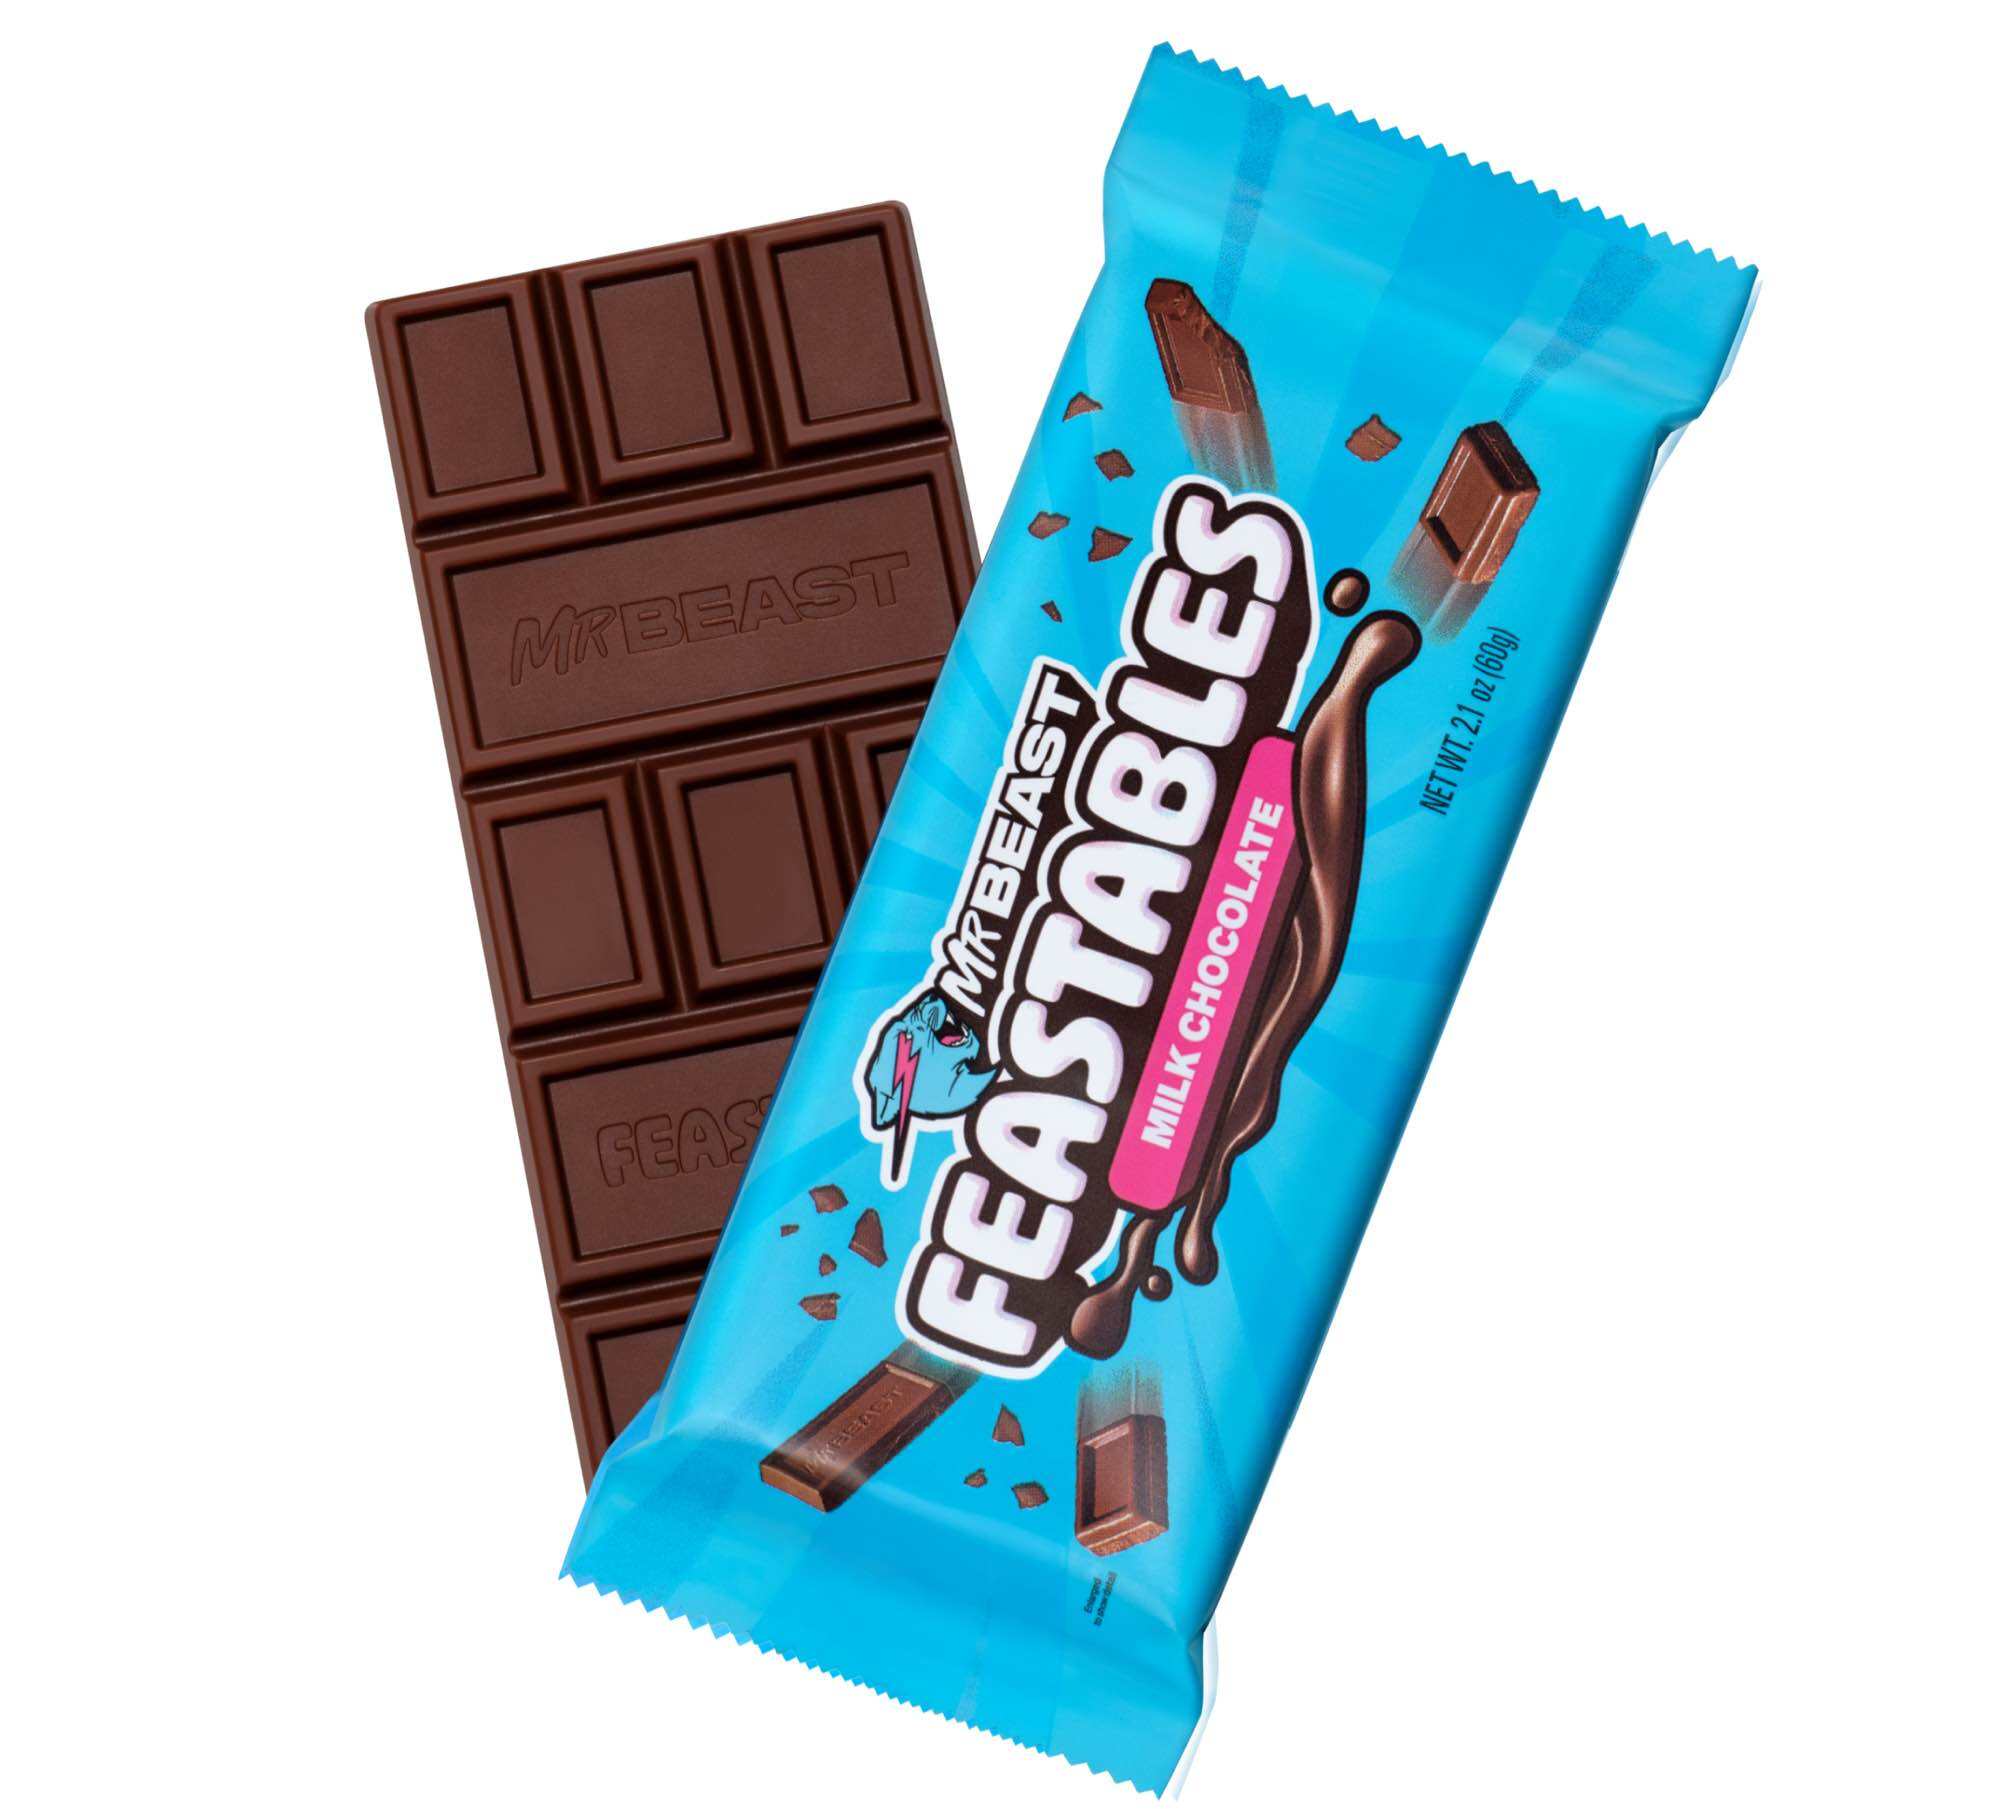 Tặng kèm đá gel - Kẹo socola Mỹ bản giới hạn Mr. Beast thanh 60gr Mrbeast